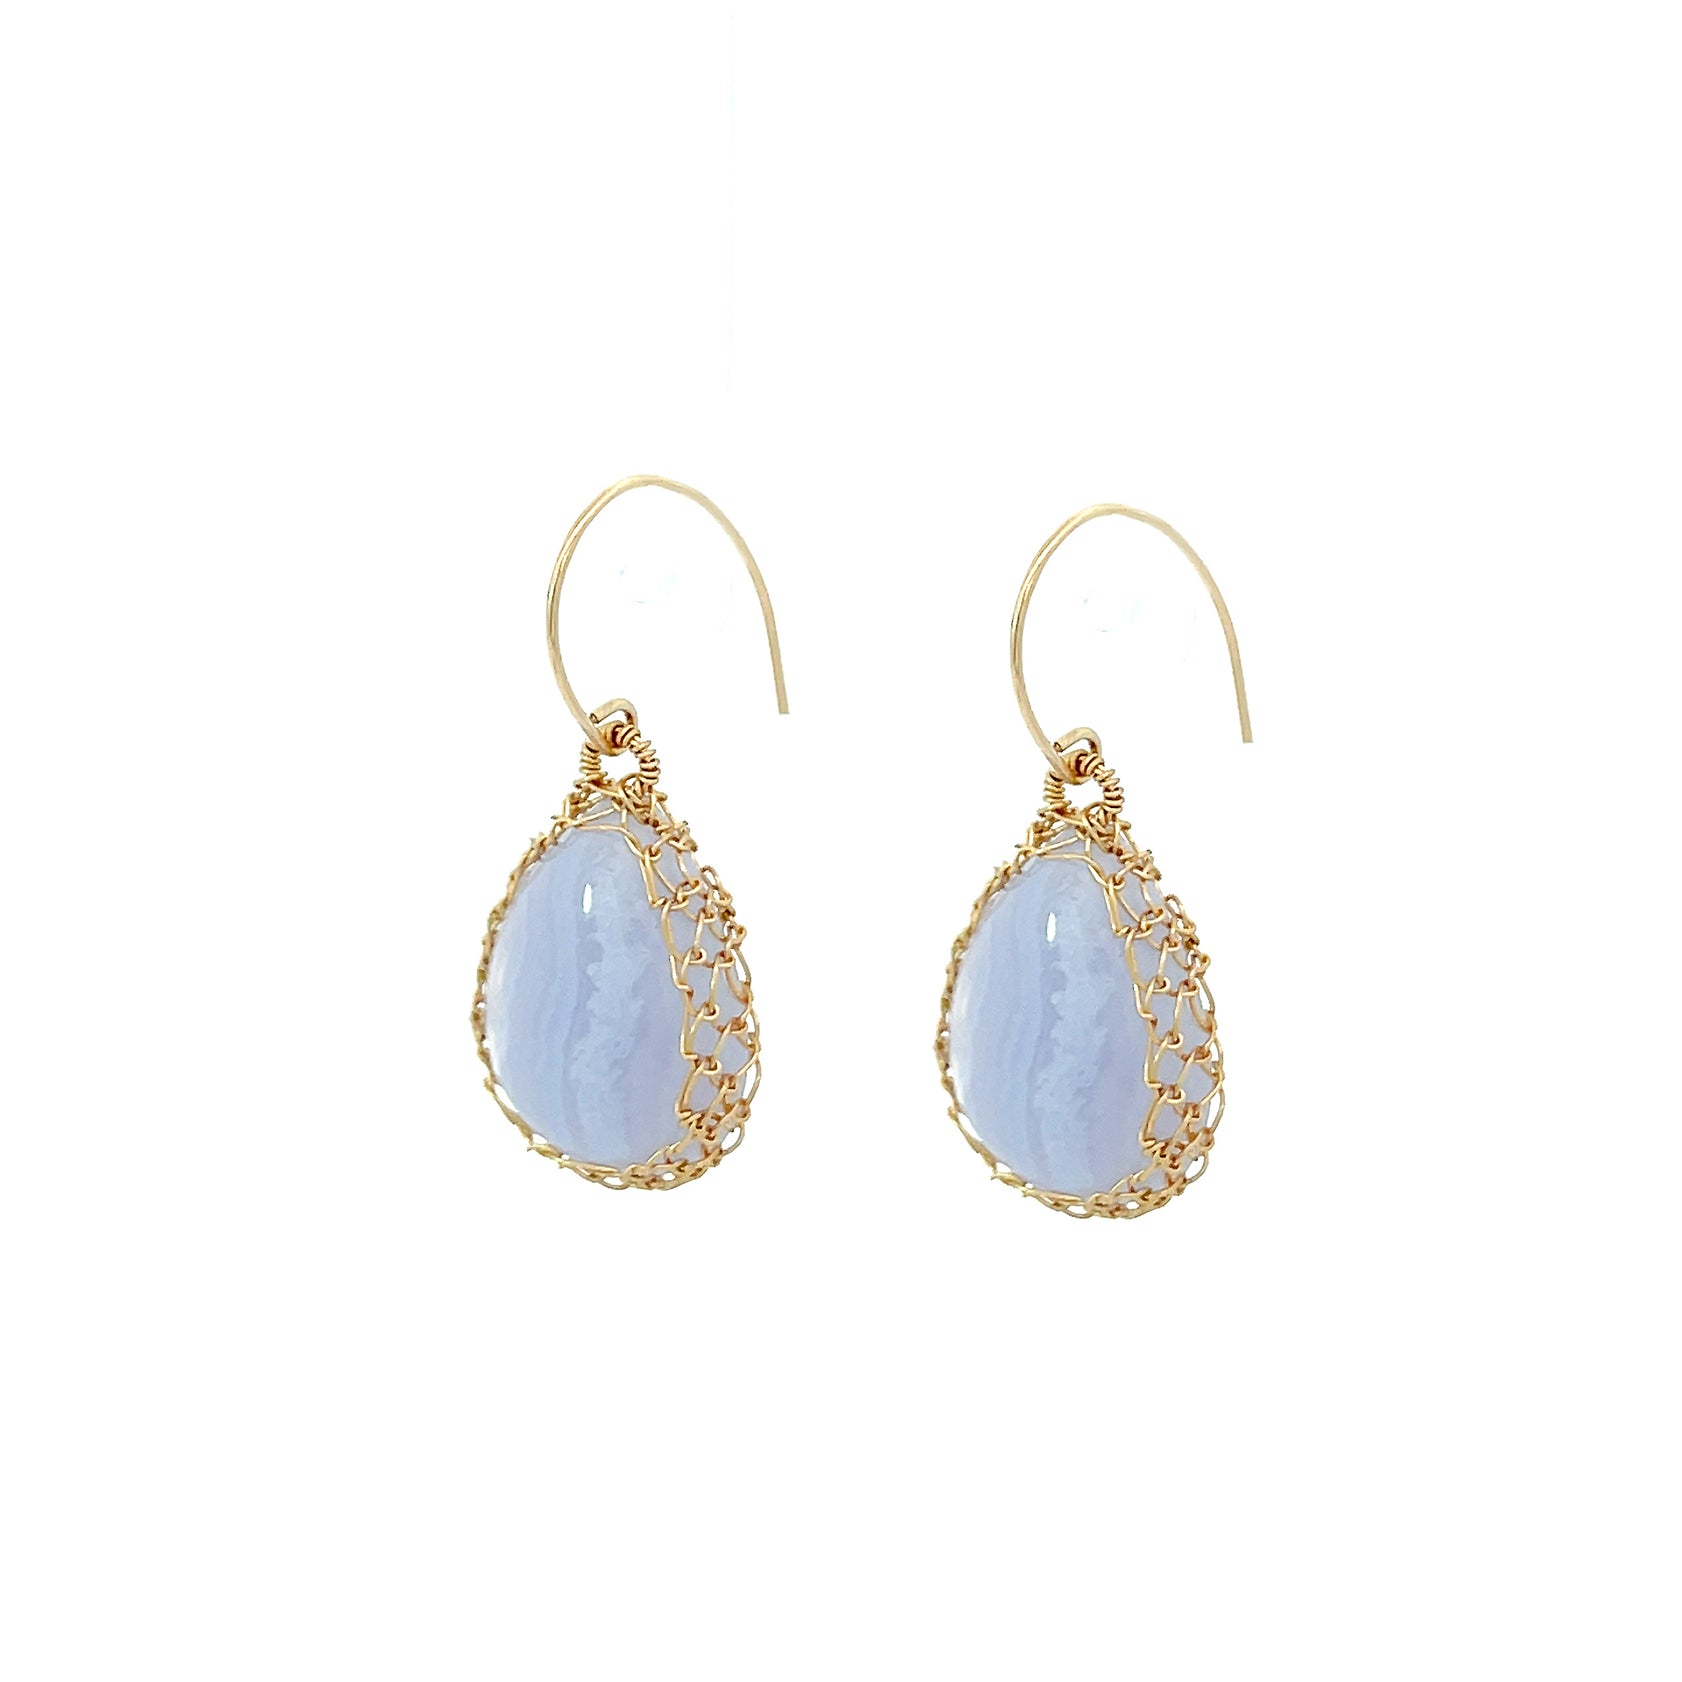 Elegant Blue Lace Agate Tear Drop Earrings by NATI